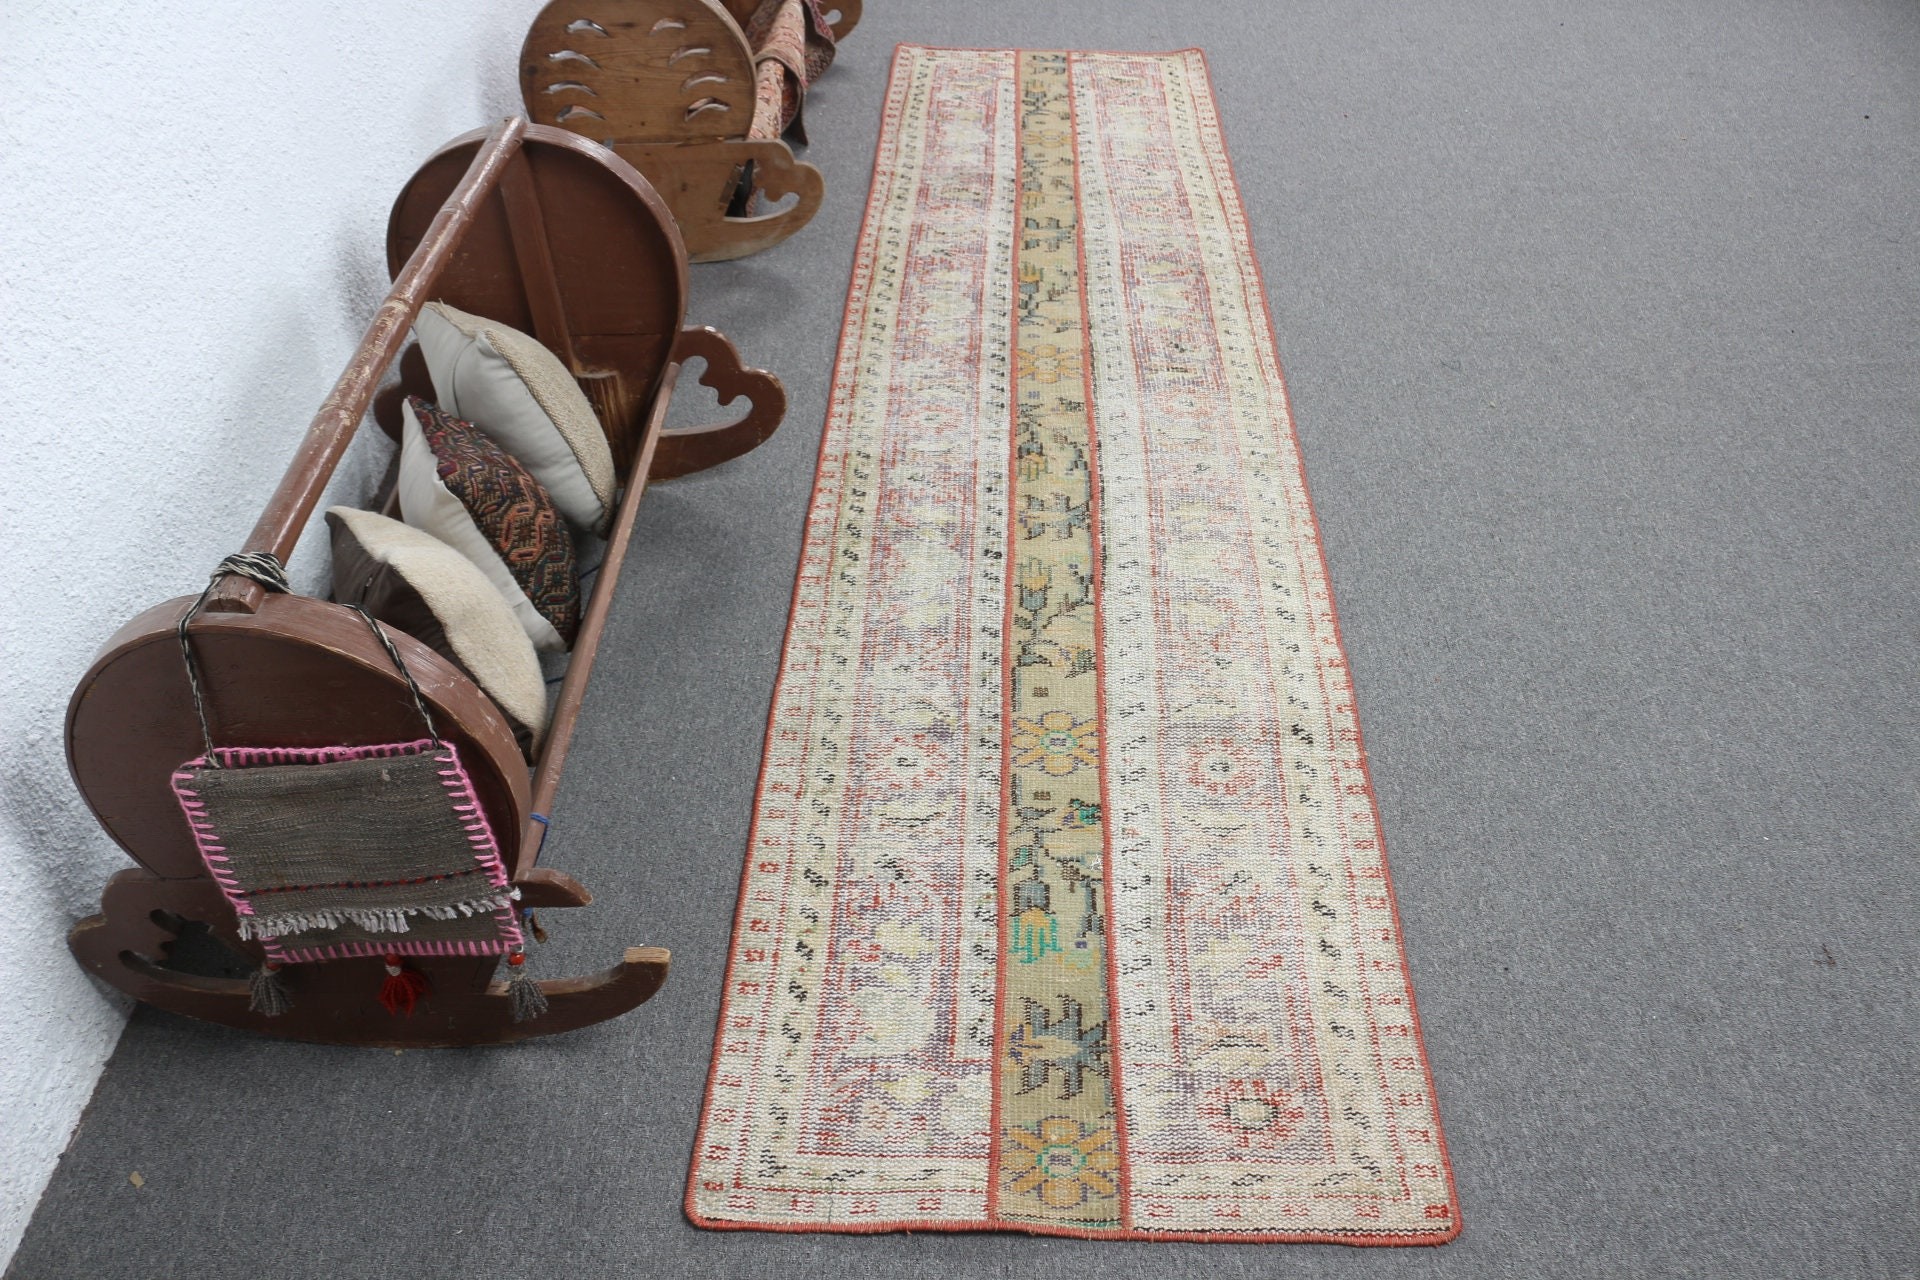 Vintage Rug, Turkish Rug, Rugs for Kitchen, Moroccan Rug, Tribal Rug, Beige Bedroom Rugs, 2.3x9.1 ft Runner Rugs, Stair Rug, Antique Rug